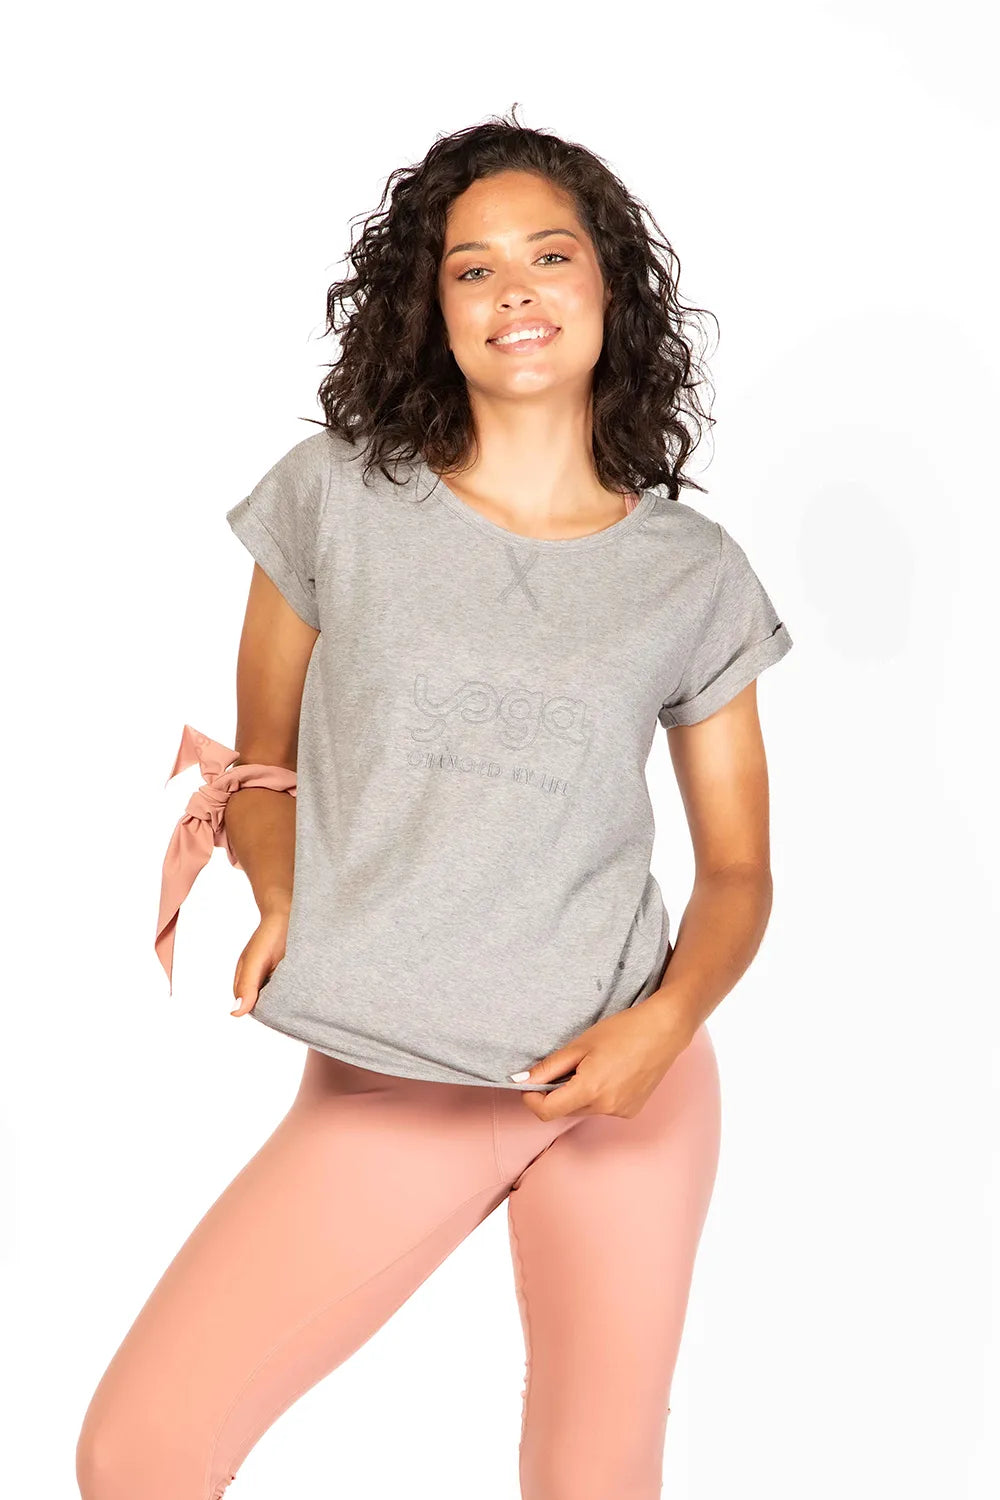 Tshirt Yoga Changed con bordado delantero con frase &quot;Yoga Changed my life&quot; . Color gris Quiet Gray de Yogimi.